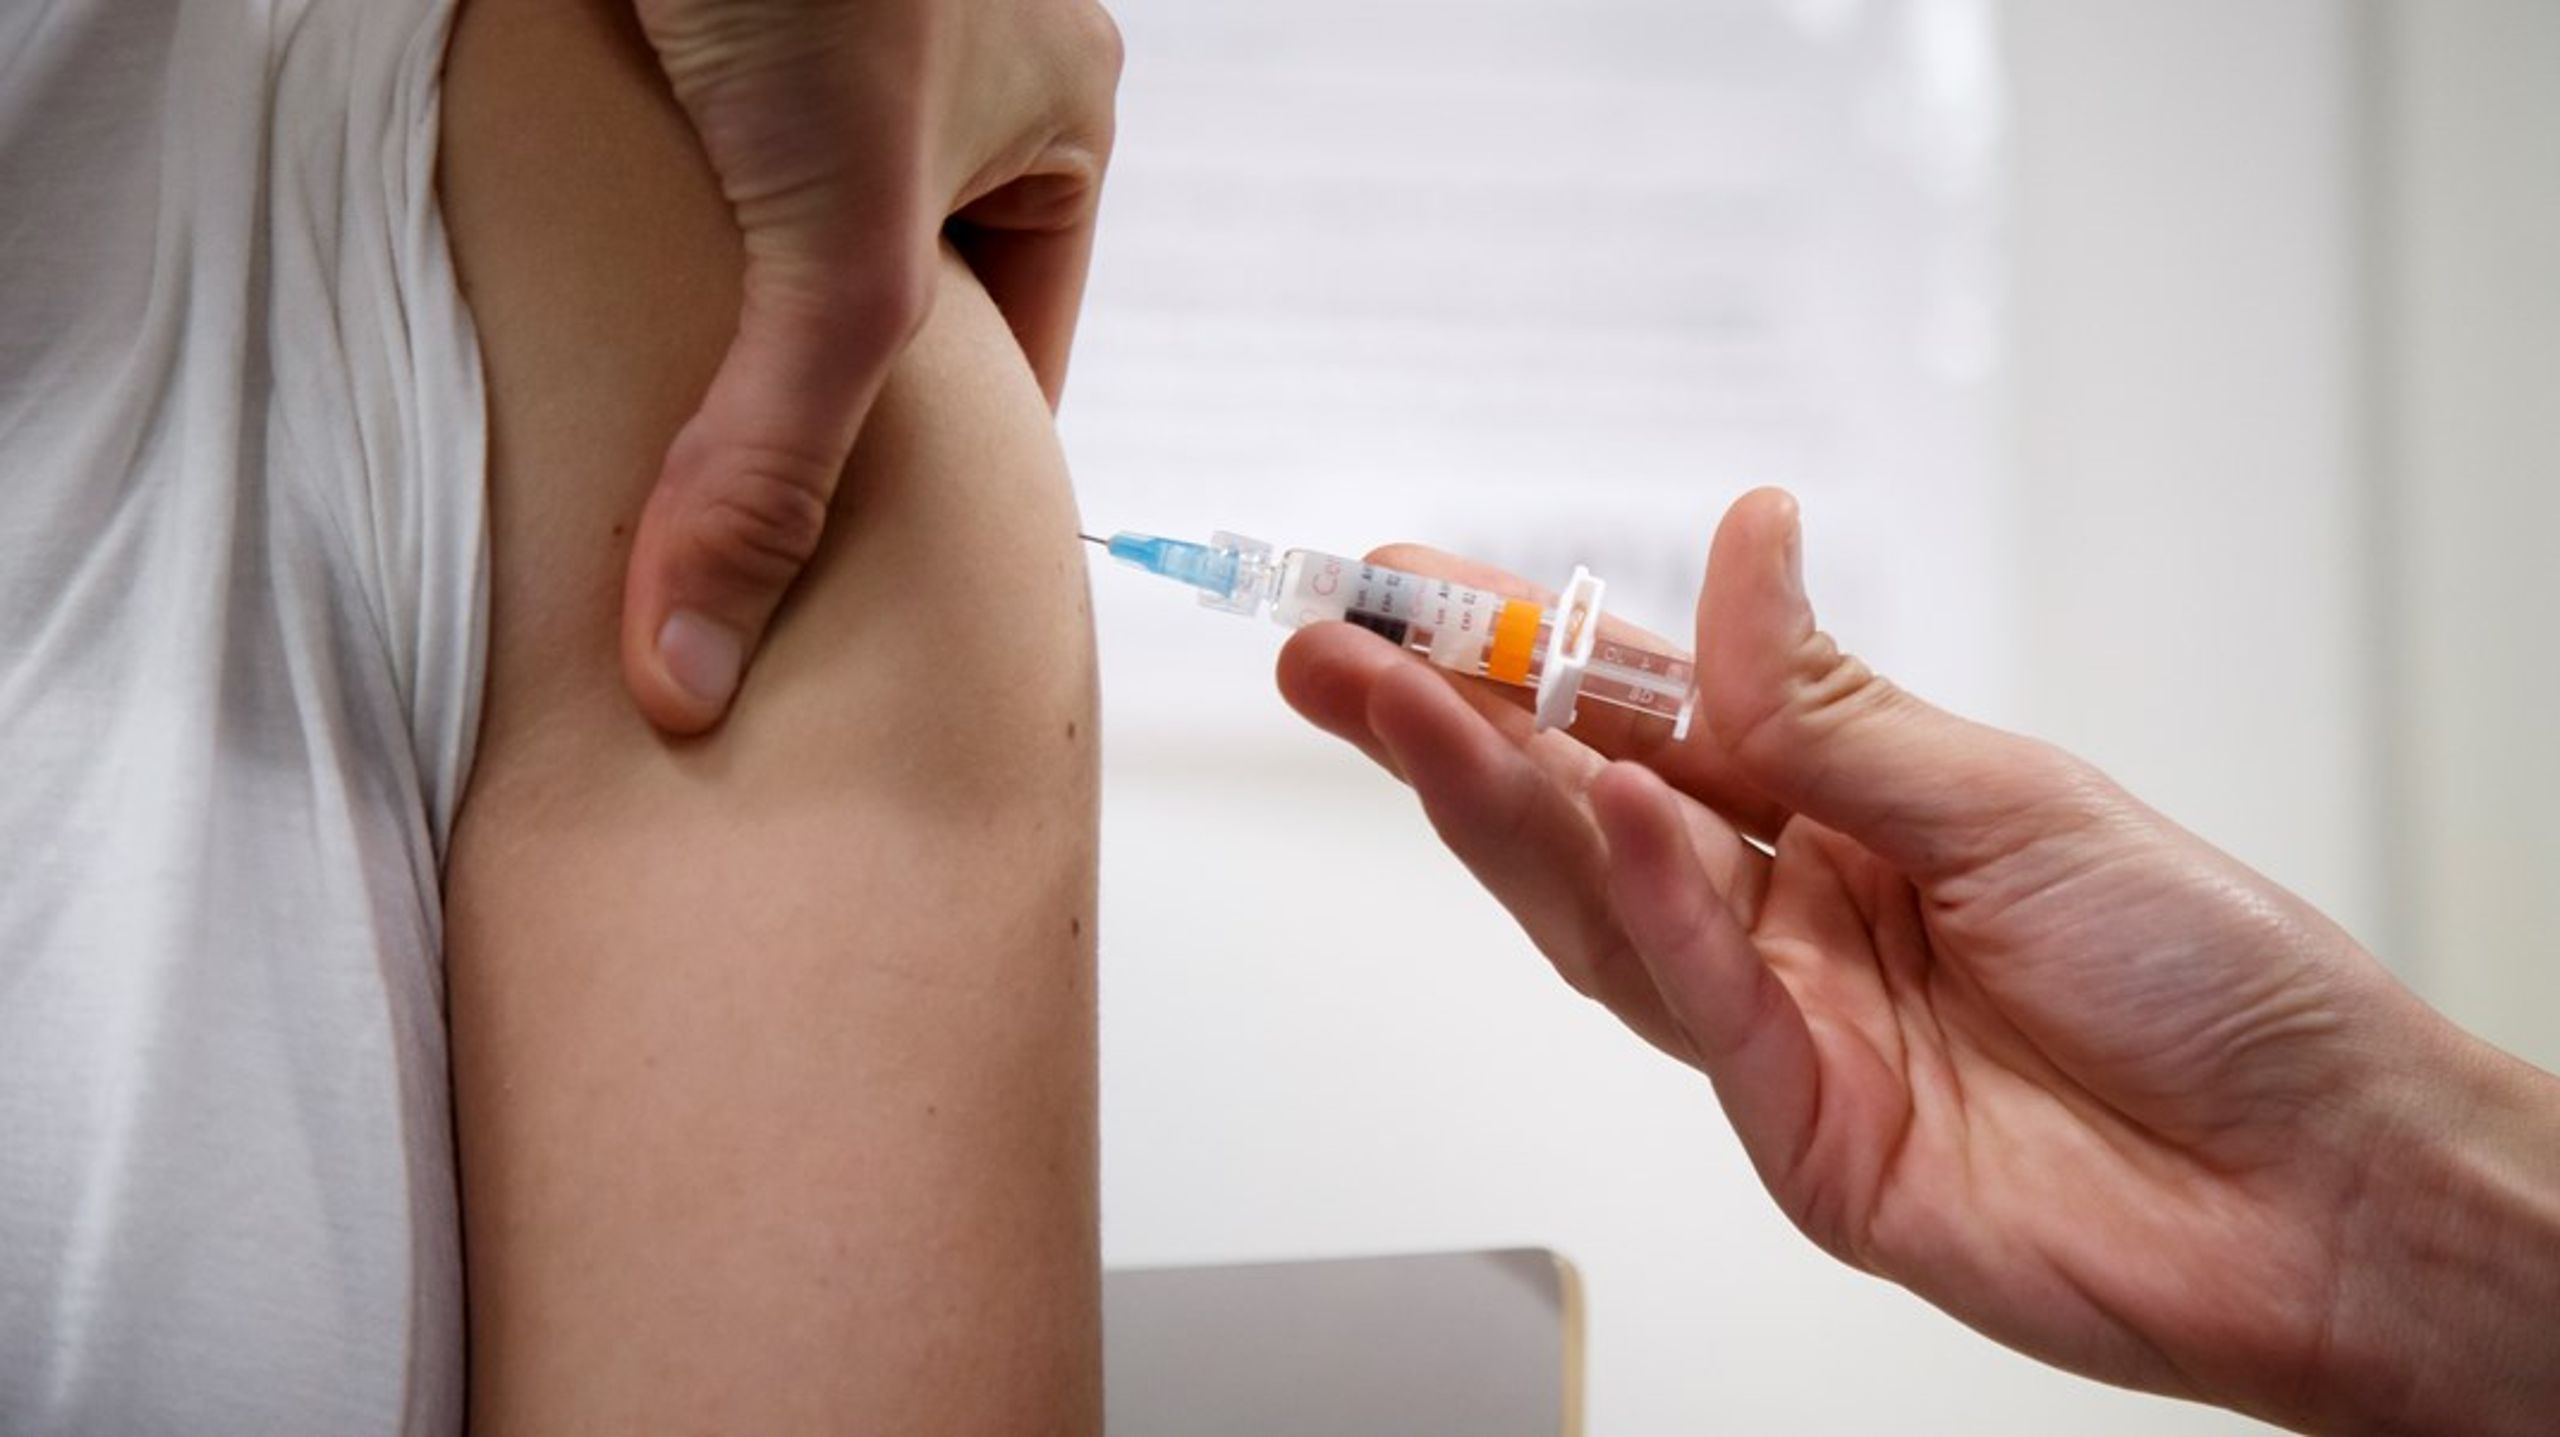 ”Moderaterna och Kristdemokraterna föreslår att regeringen ger i uppdrag att genomföra en så kallad catch-up vaccination.”